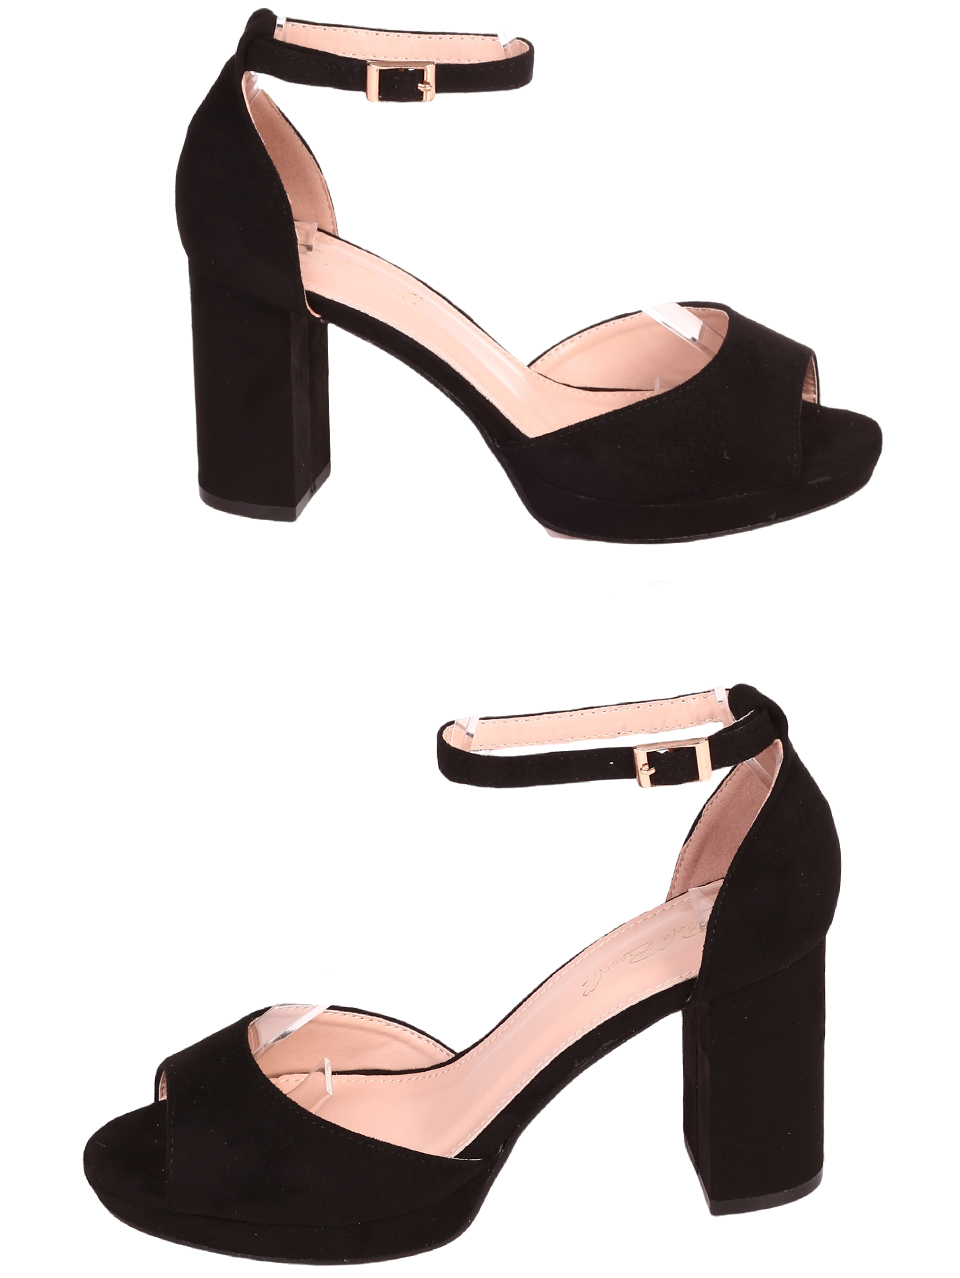 Елегантни дамски сандали в черно 4M-24020 black mf